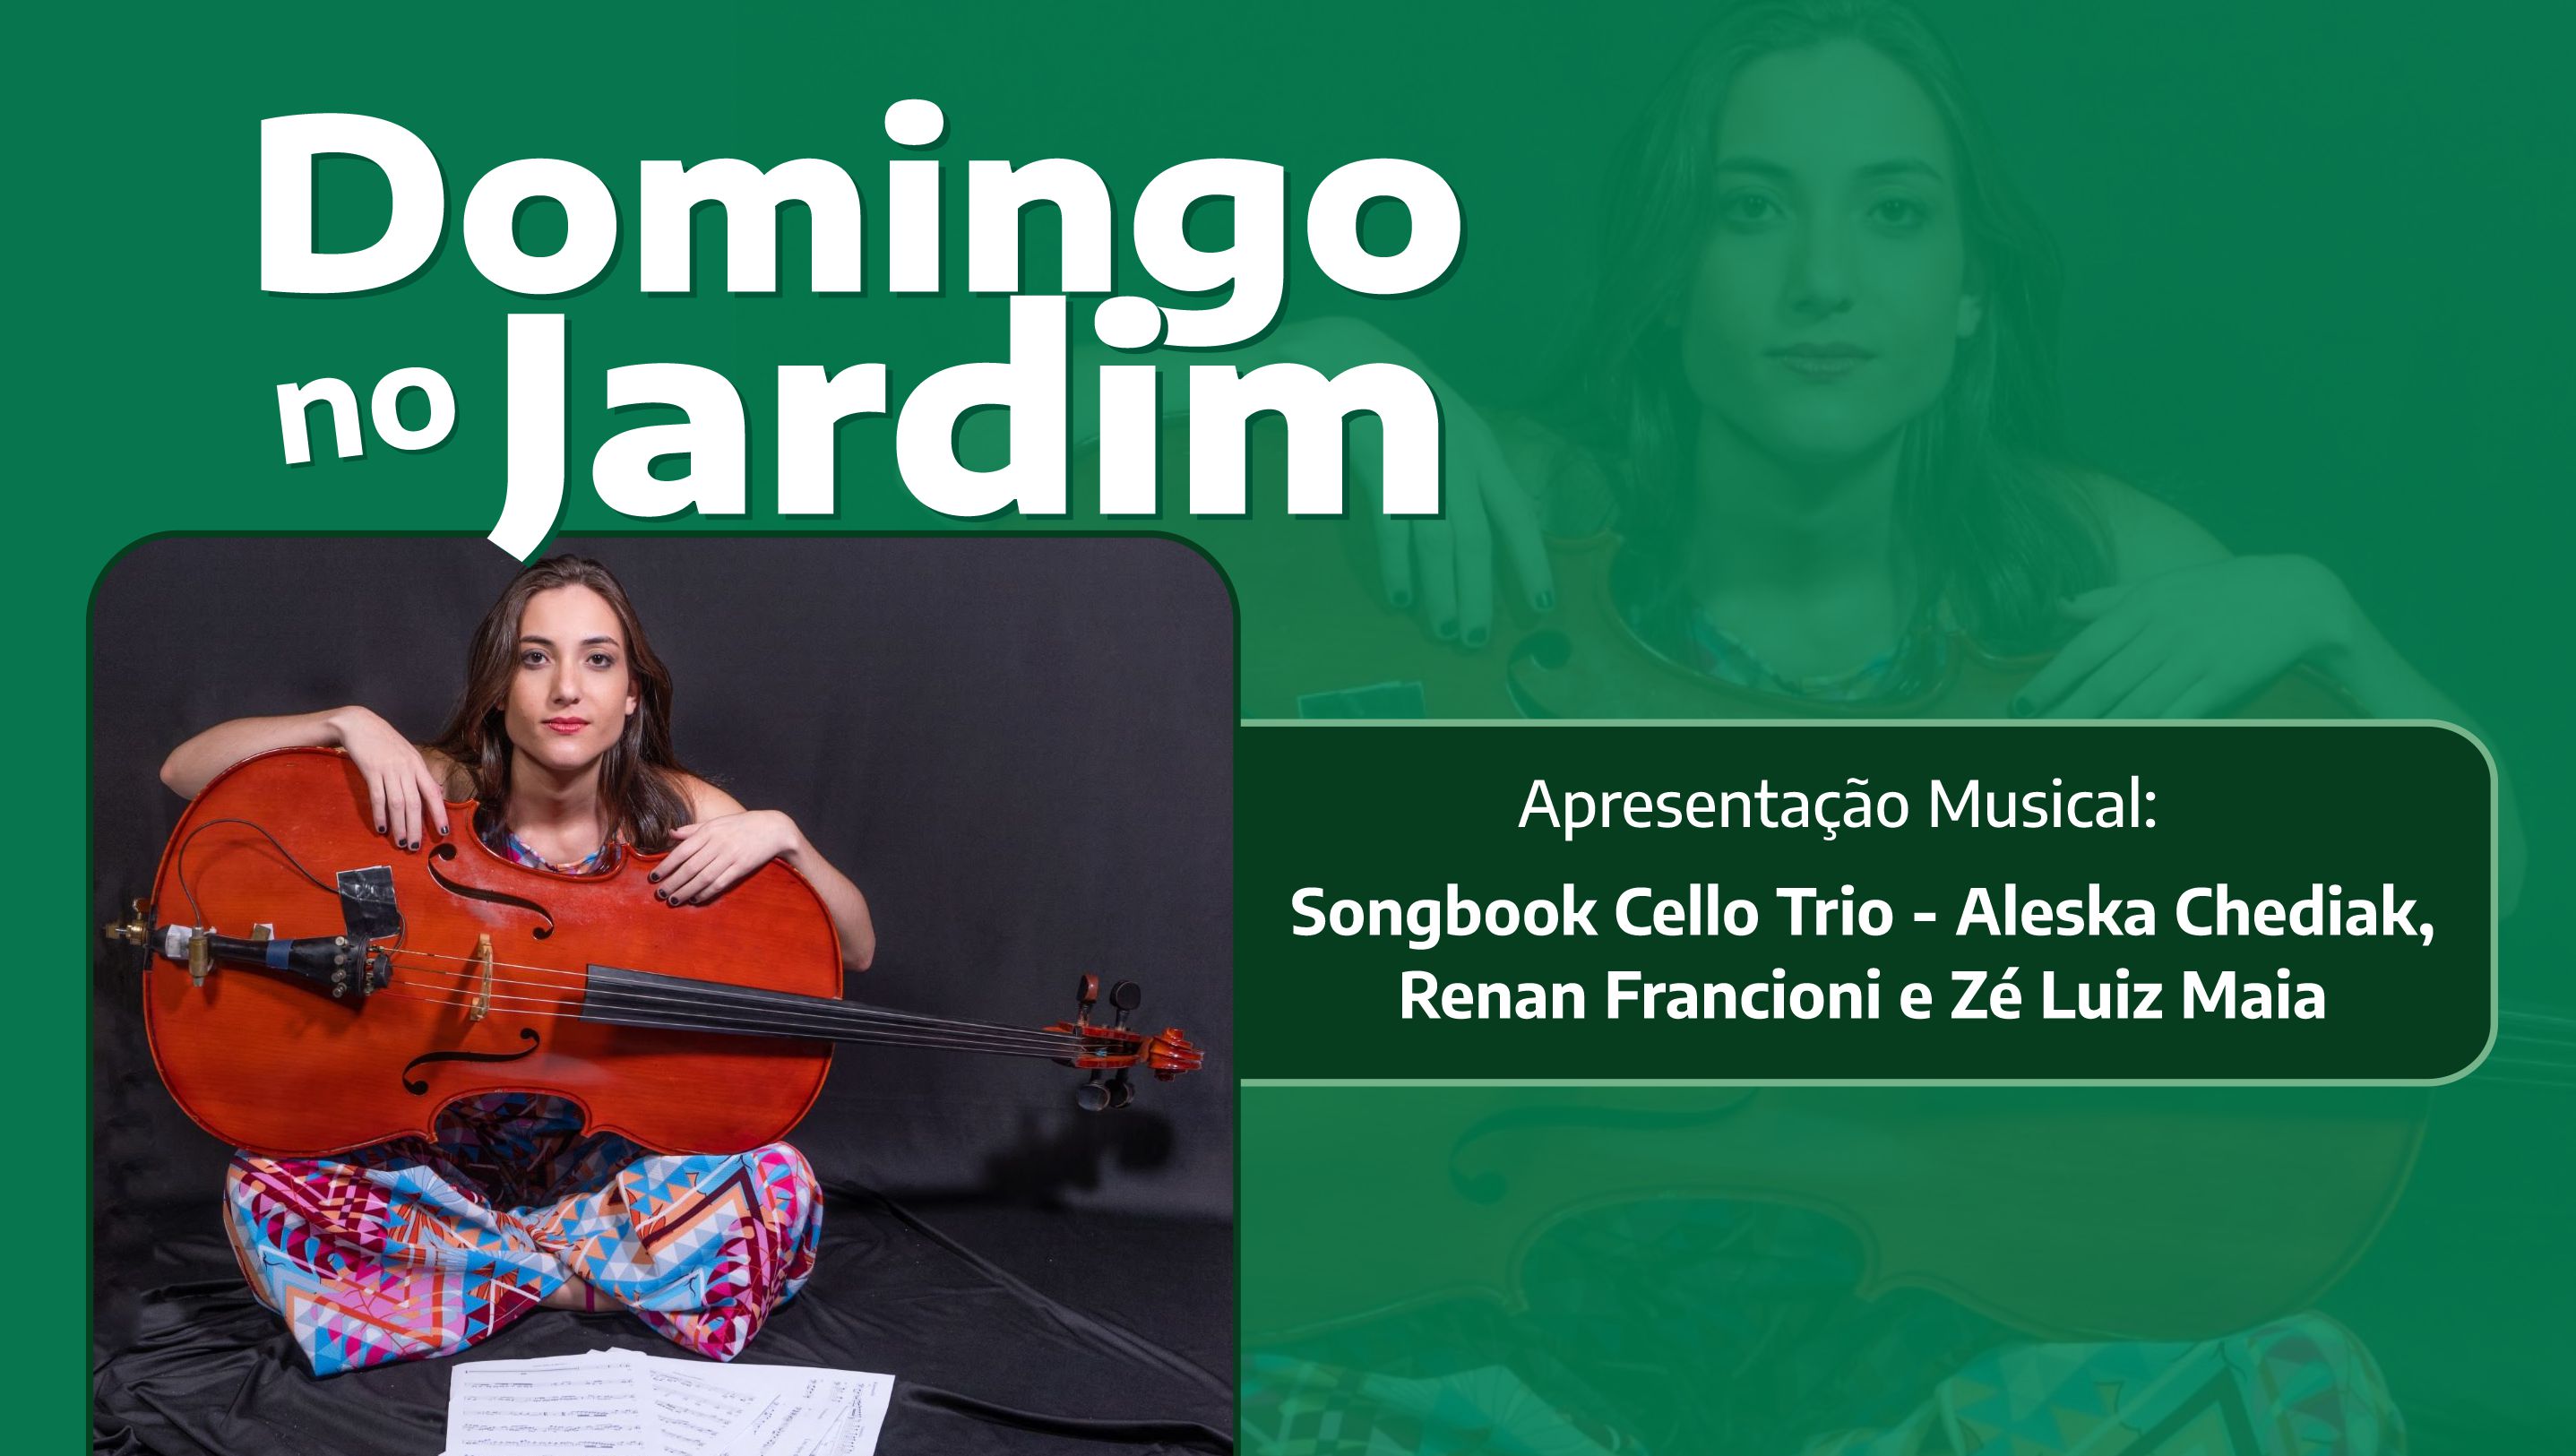 Songbook Cello Trio é atração do Domingo no Jardim no dia 9 de junho